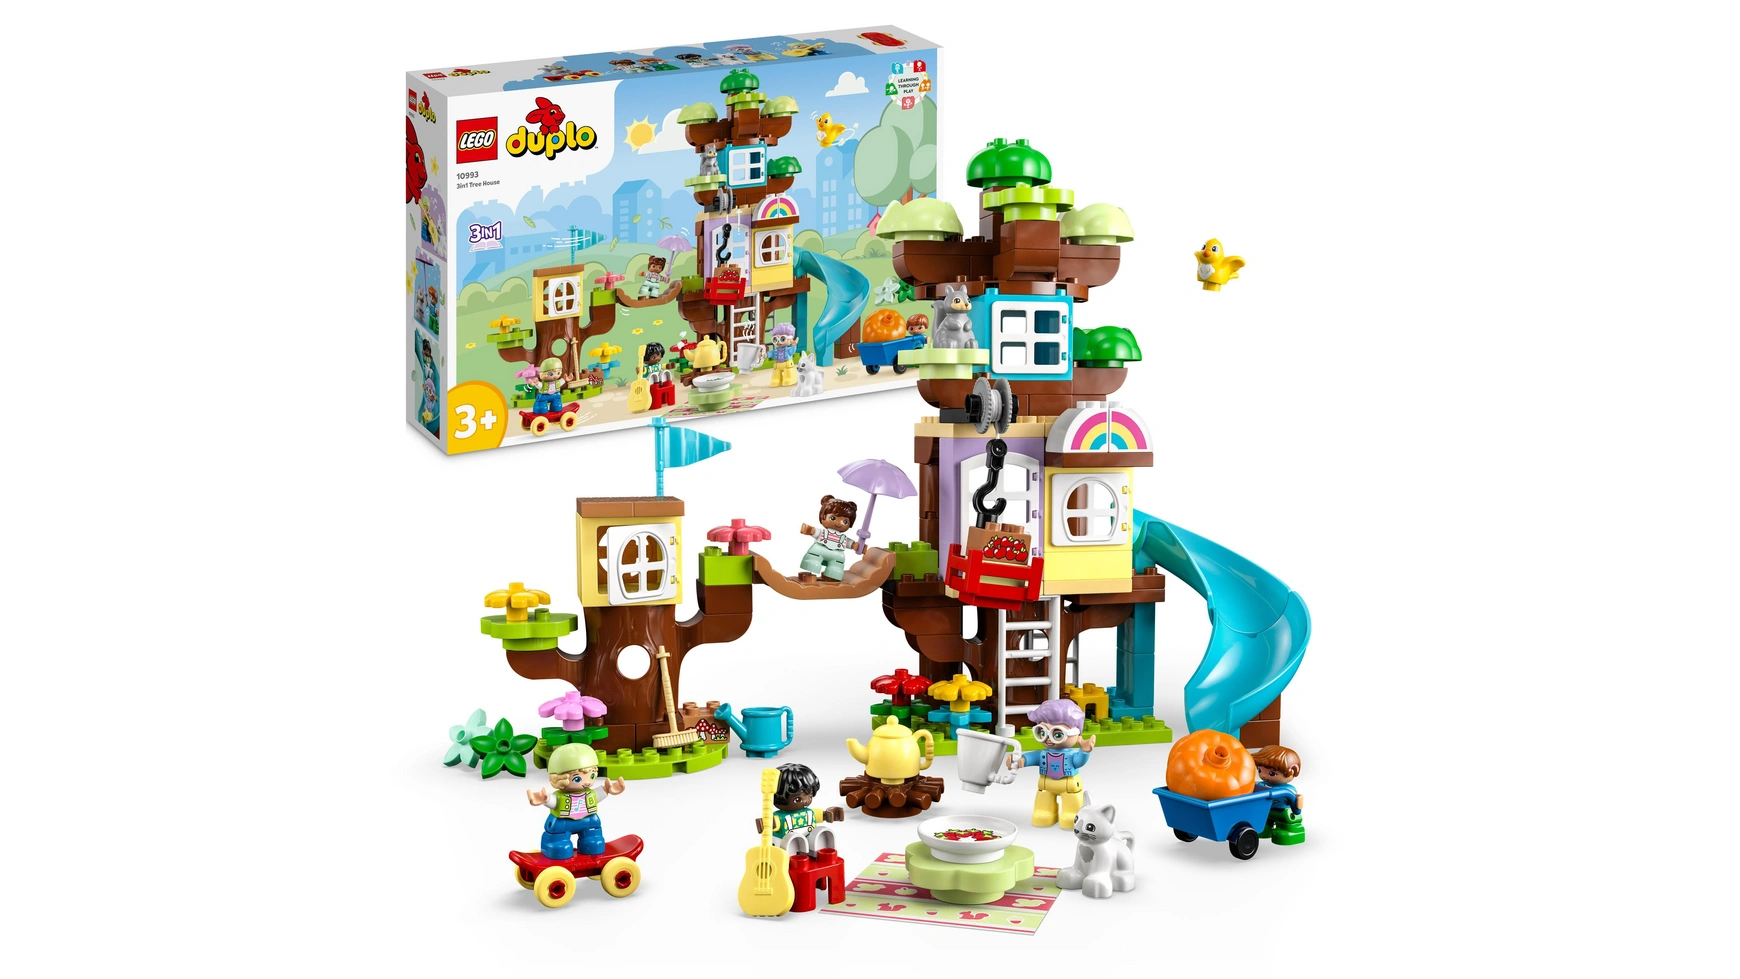 Lego DUPLO Набор игрушек Домик на дереве 3 в 1 для малышей с животными конструктор lego duplo 10545 бэтмен приключение в бане пещеры